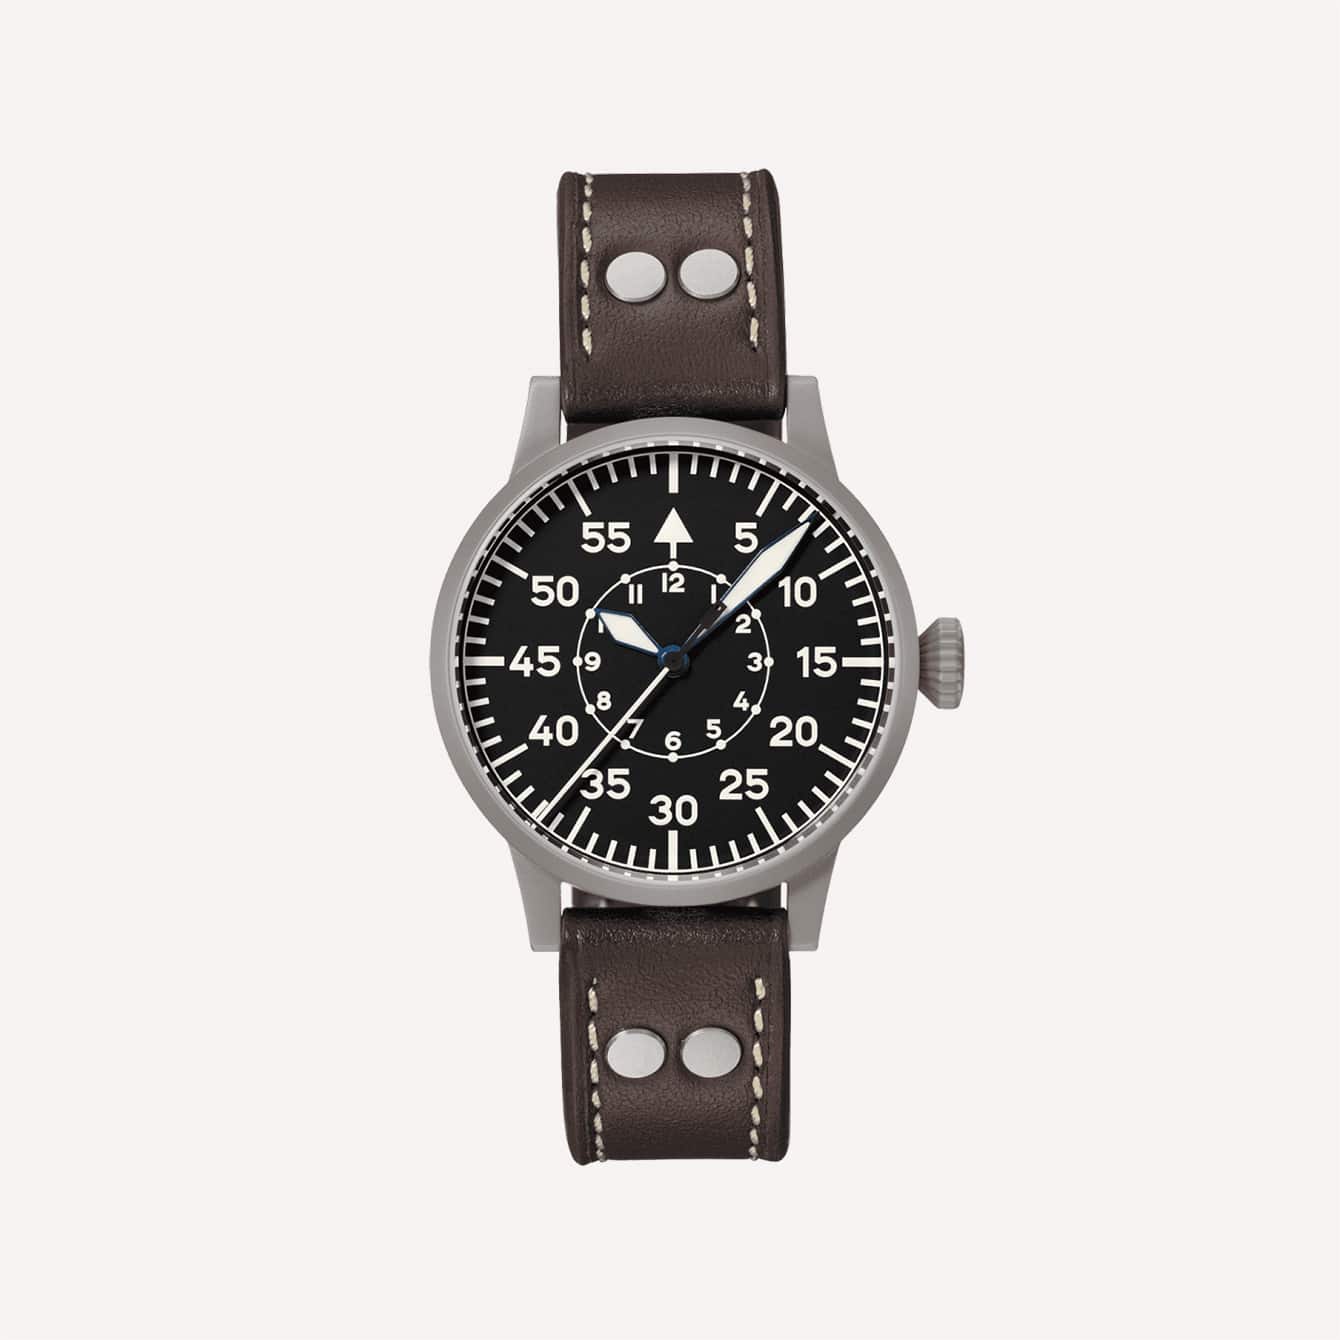 Speyer Original Pilot Watch